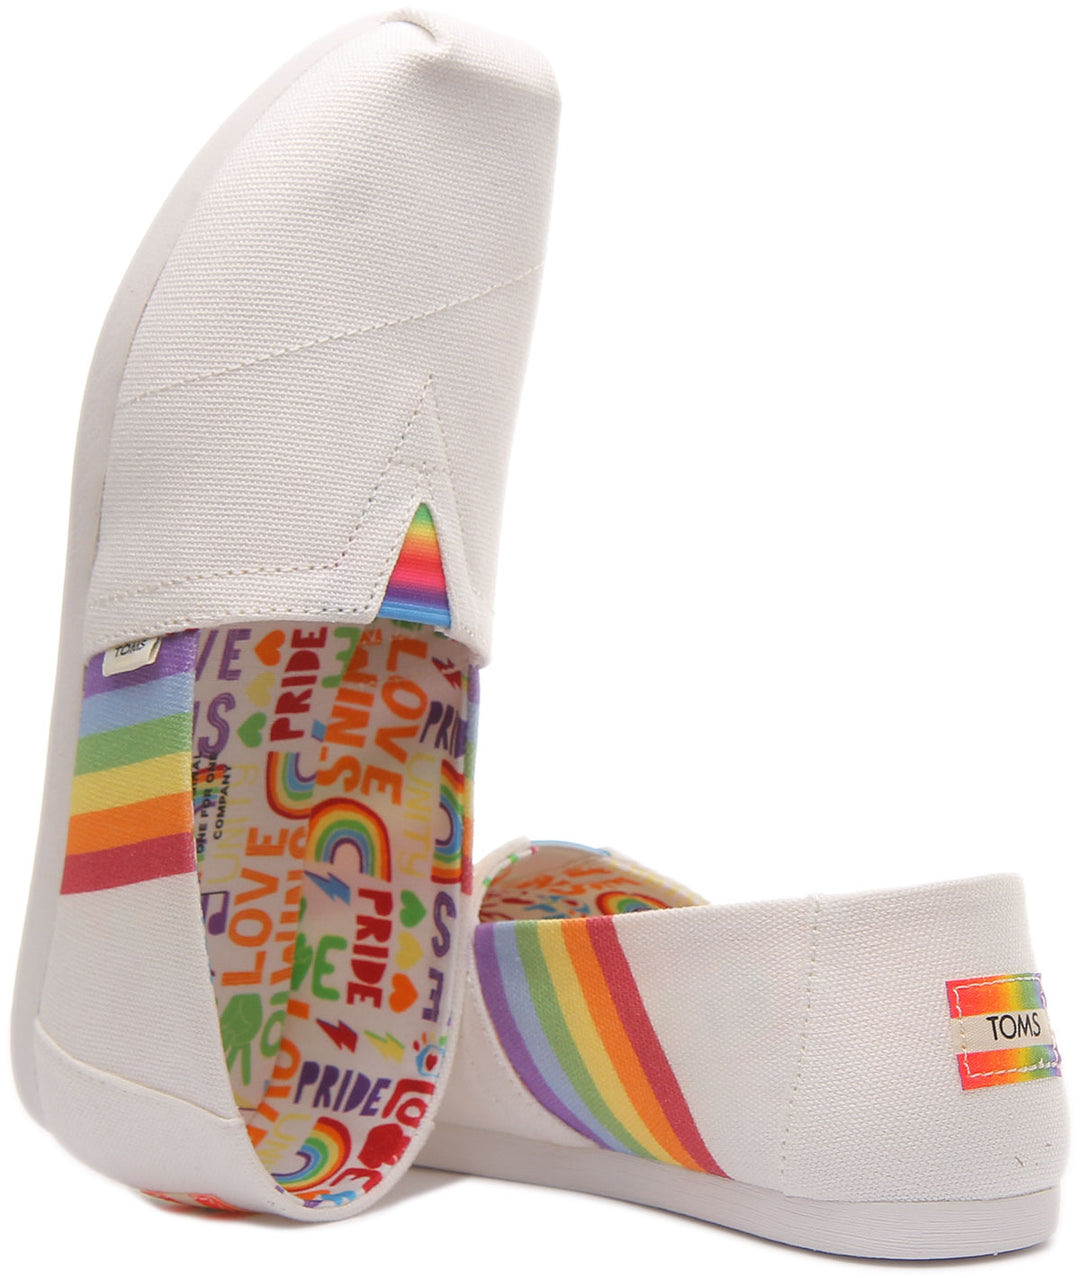 Toms Alpargata Zapatillas de deporte alpargatas veganas inspiradas en el Pride para mujer en blanco multi